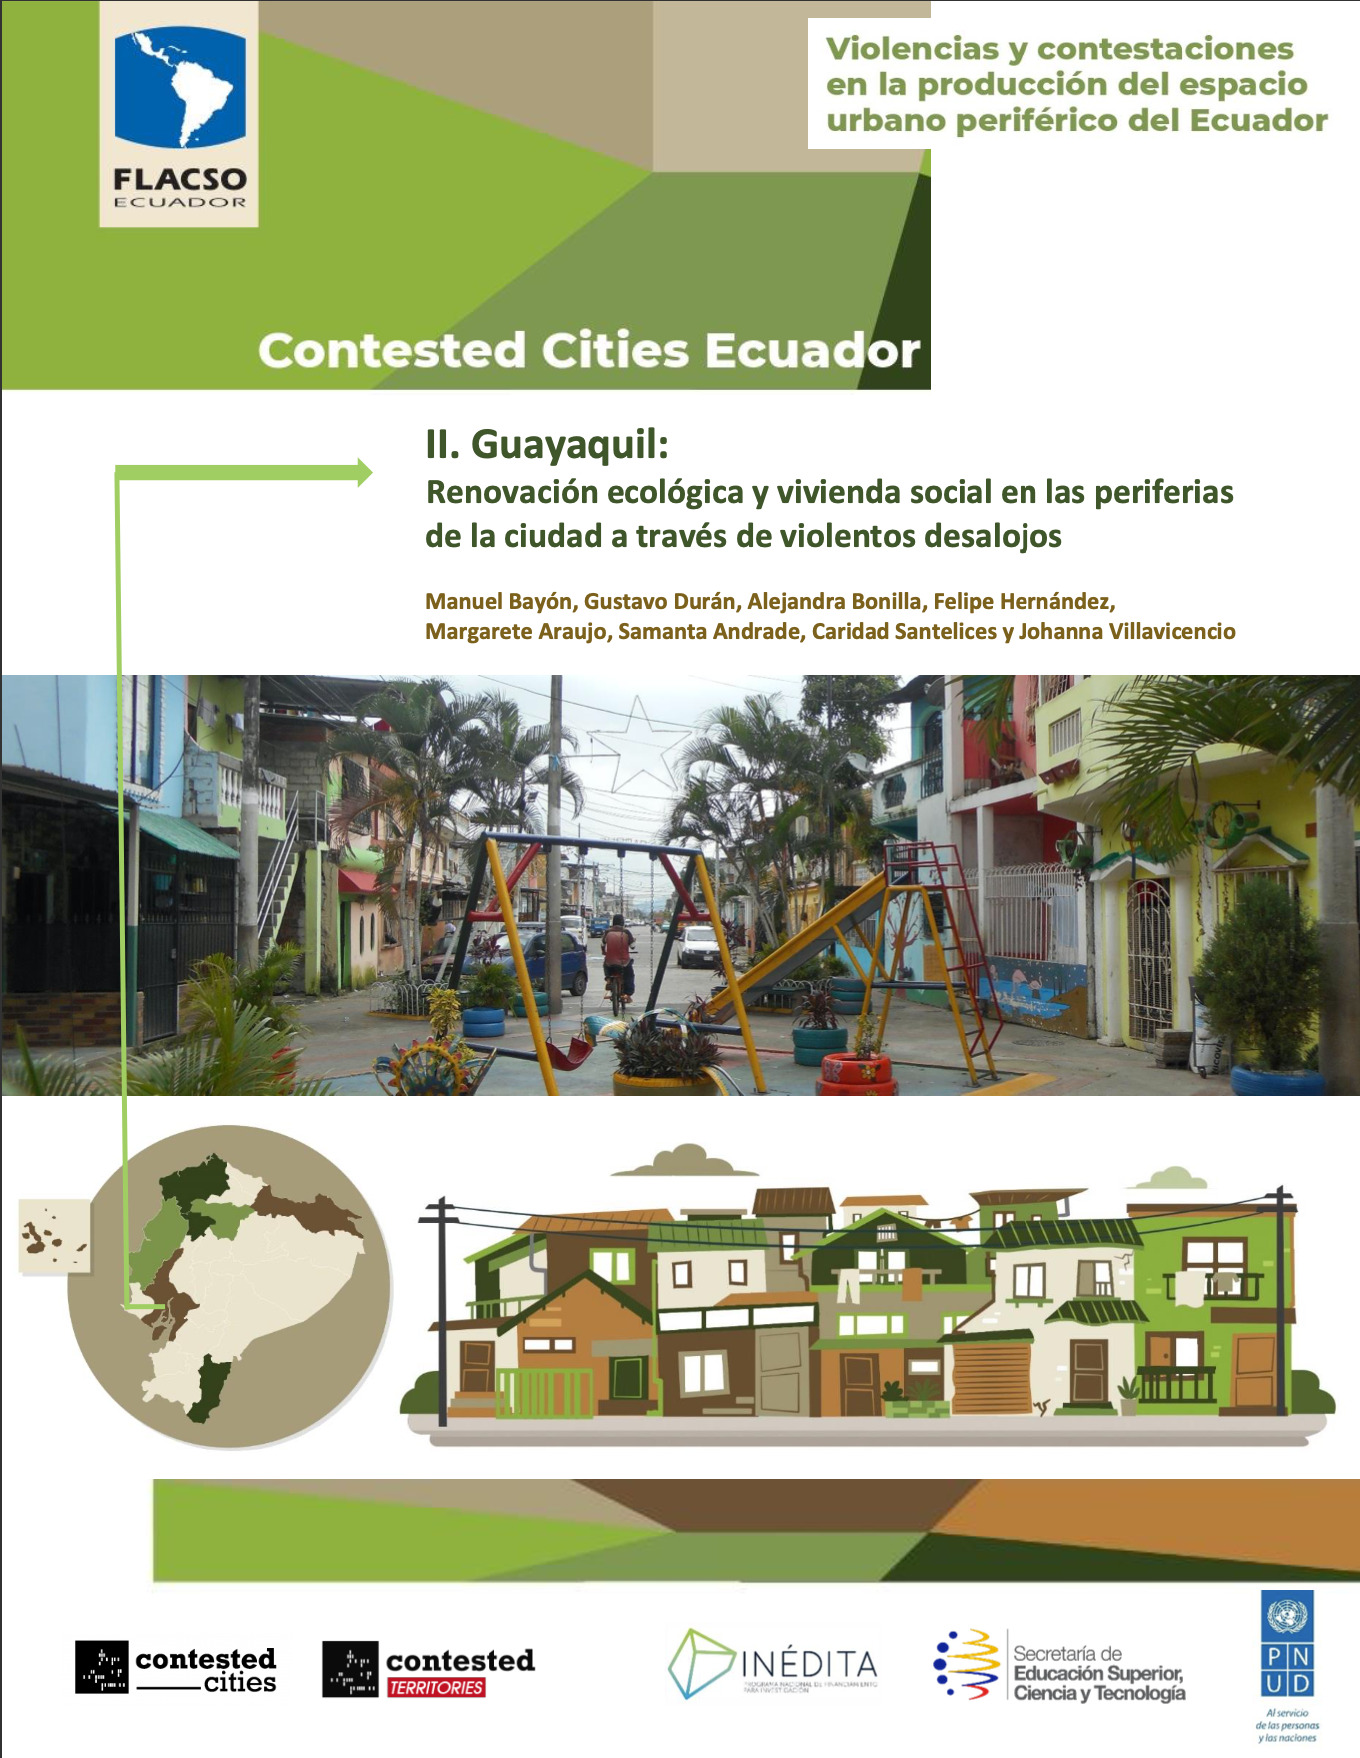 II. Guayaquil: Renovación ecológica y vivienda social en las periferias de la ciudad a través de violentos desalojos